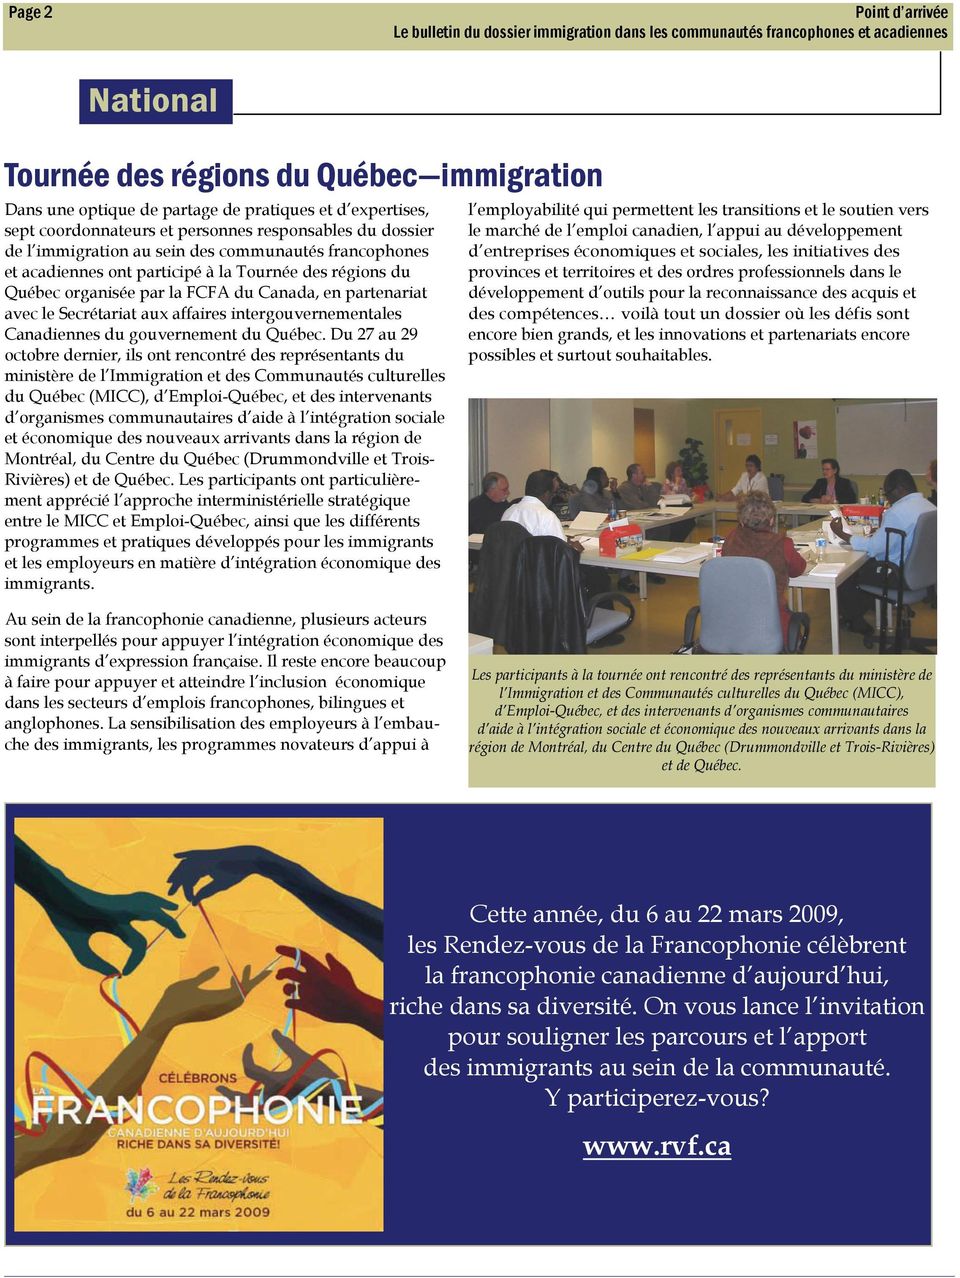 Du 27 au 29 octobre dernier, ils ont rencontré des représentants du ministère de l Immigration et des Communautés culturelles du Québec (MICC), d Emploi-Québec, et des intervenants d organismes